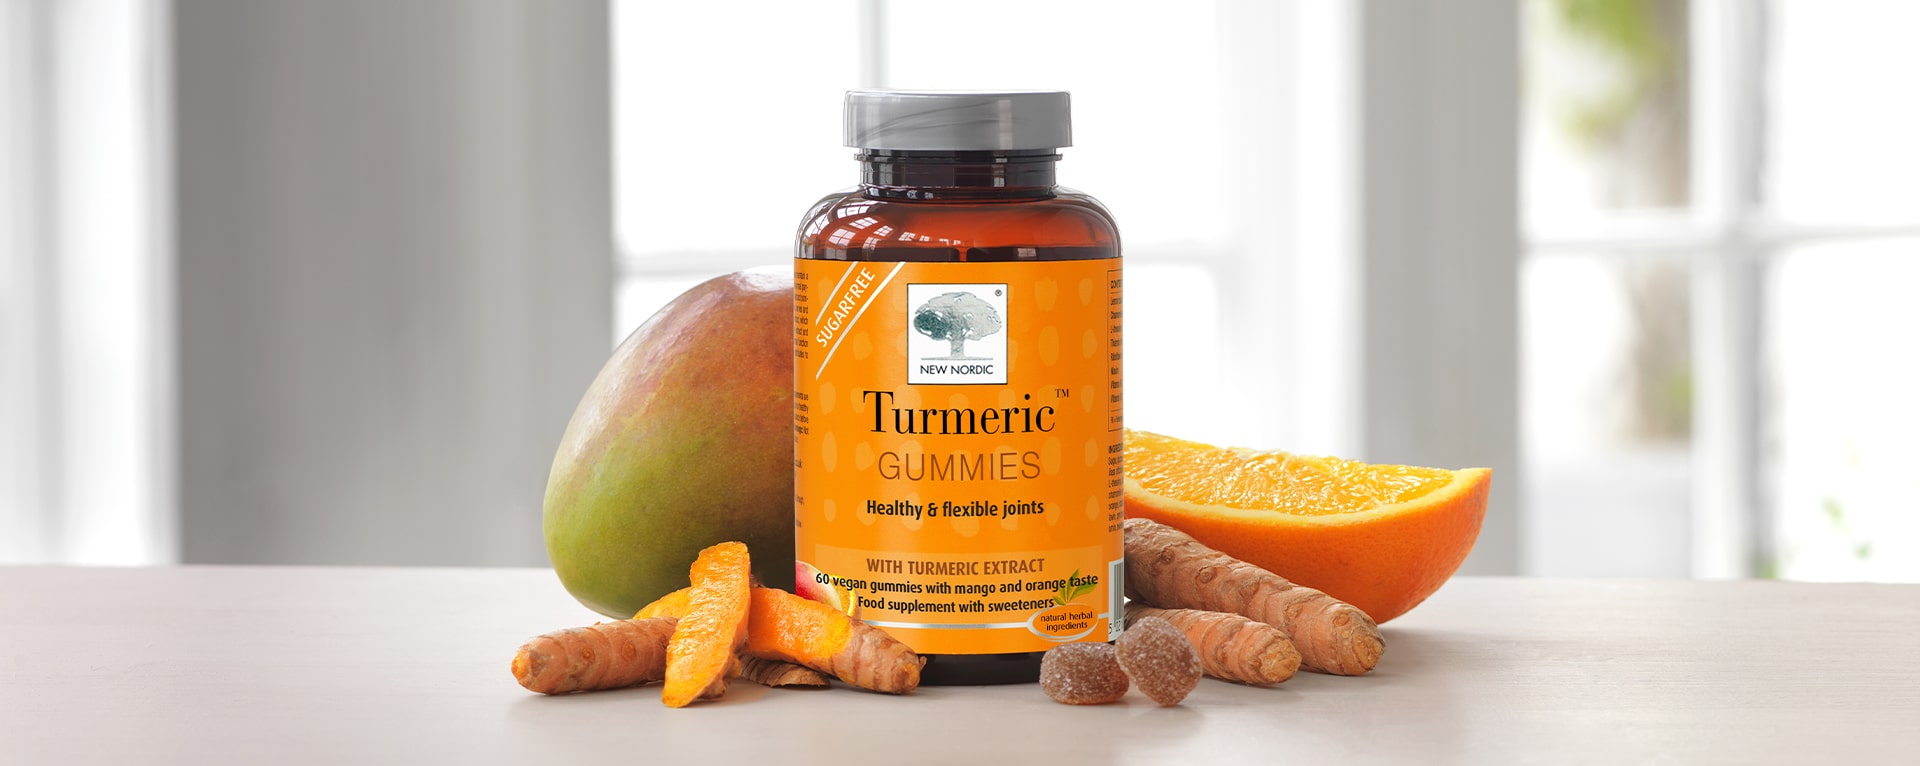 Turmeric™ Gummies jar surrounded by ingredients